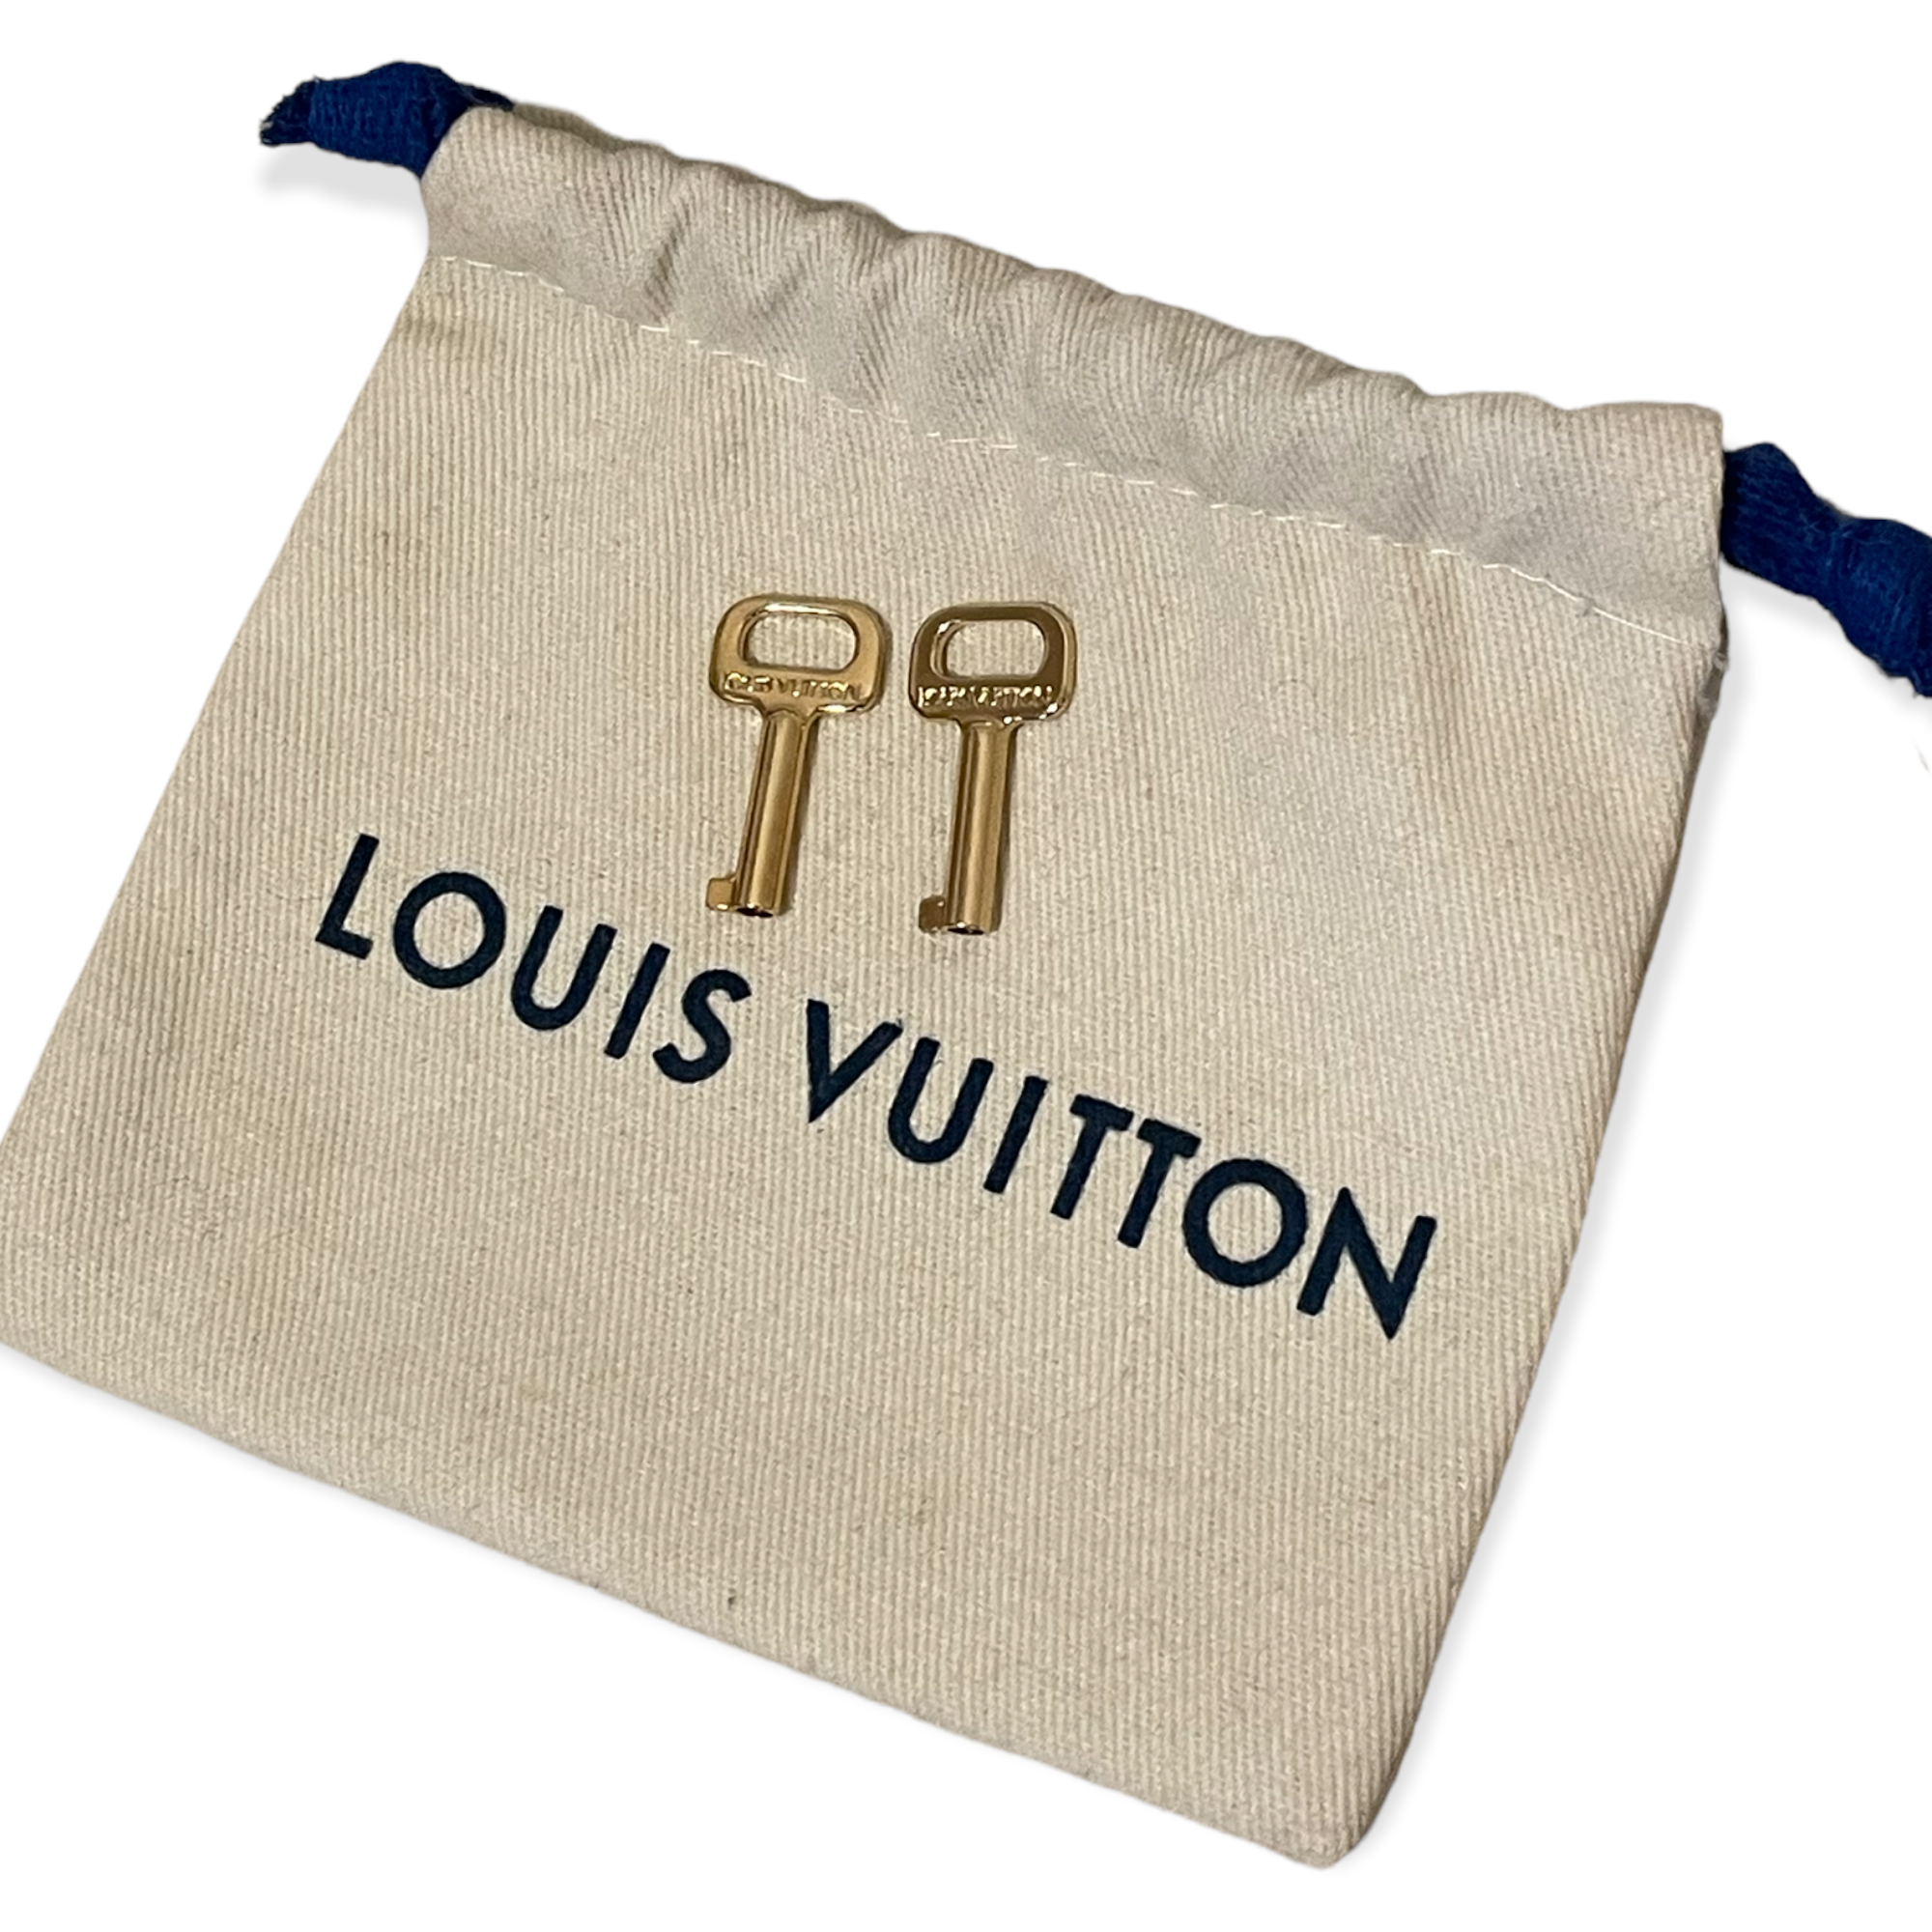 Authentic Louis Vuitton Padlock 🔐 Keys